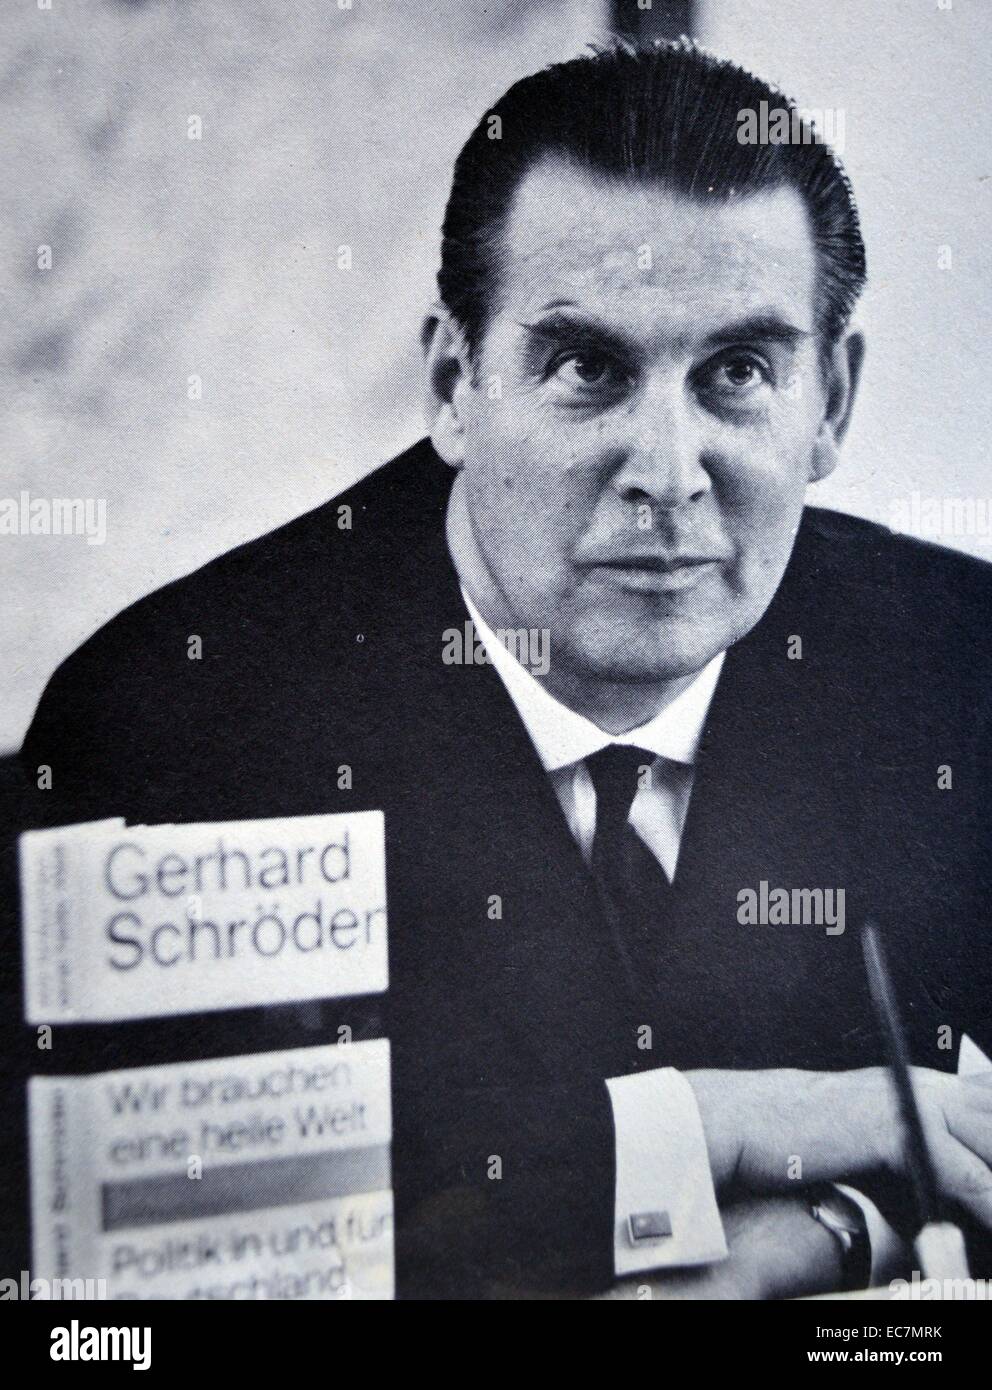 Gerhard Schröder (1910 - 31 dicembre 1989) West uomo politico tedesco e membro del cristiano Unione Democratica (CDU) partito. Ha servito come Ministro federale degli interni dal 1953 al 1961, come Ministro degli Esteri dal 1961 al 1966, e come il Ministro della Difesa dal 1966 fino al 1969. Nel 1969 elezione correva per il Presidente della Repubblica federale di Germania ma è stata outpolled da Gustav Heinemann Foto Stock